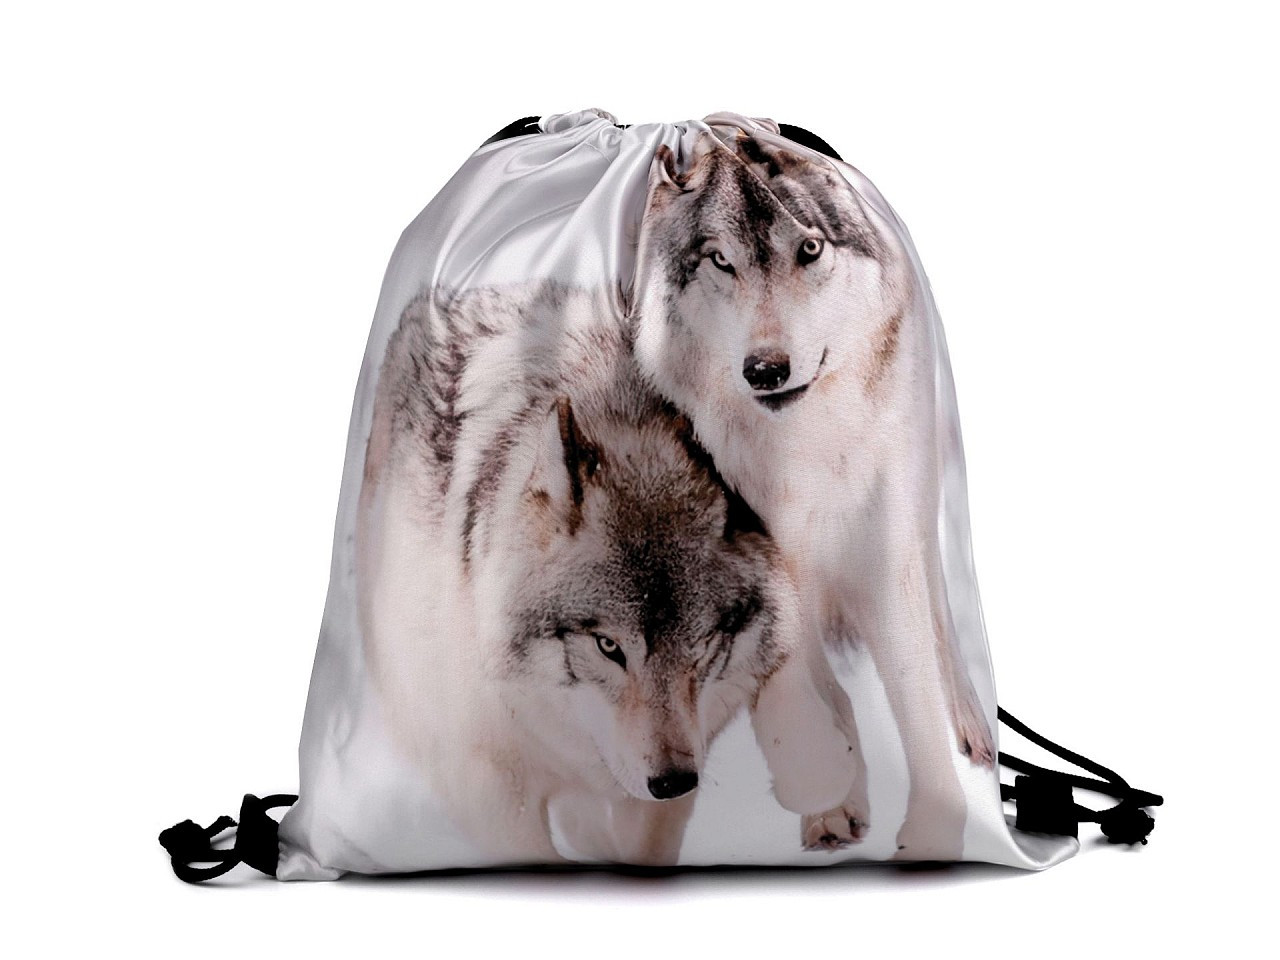 Taška / vak na záda kočka, pes, vlk, barva 1 bílá vlk